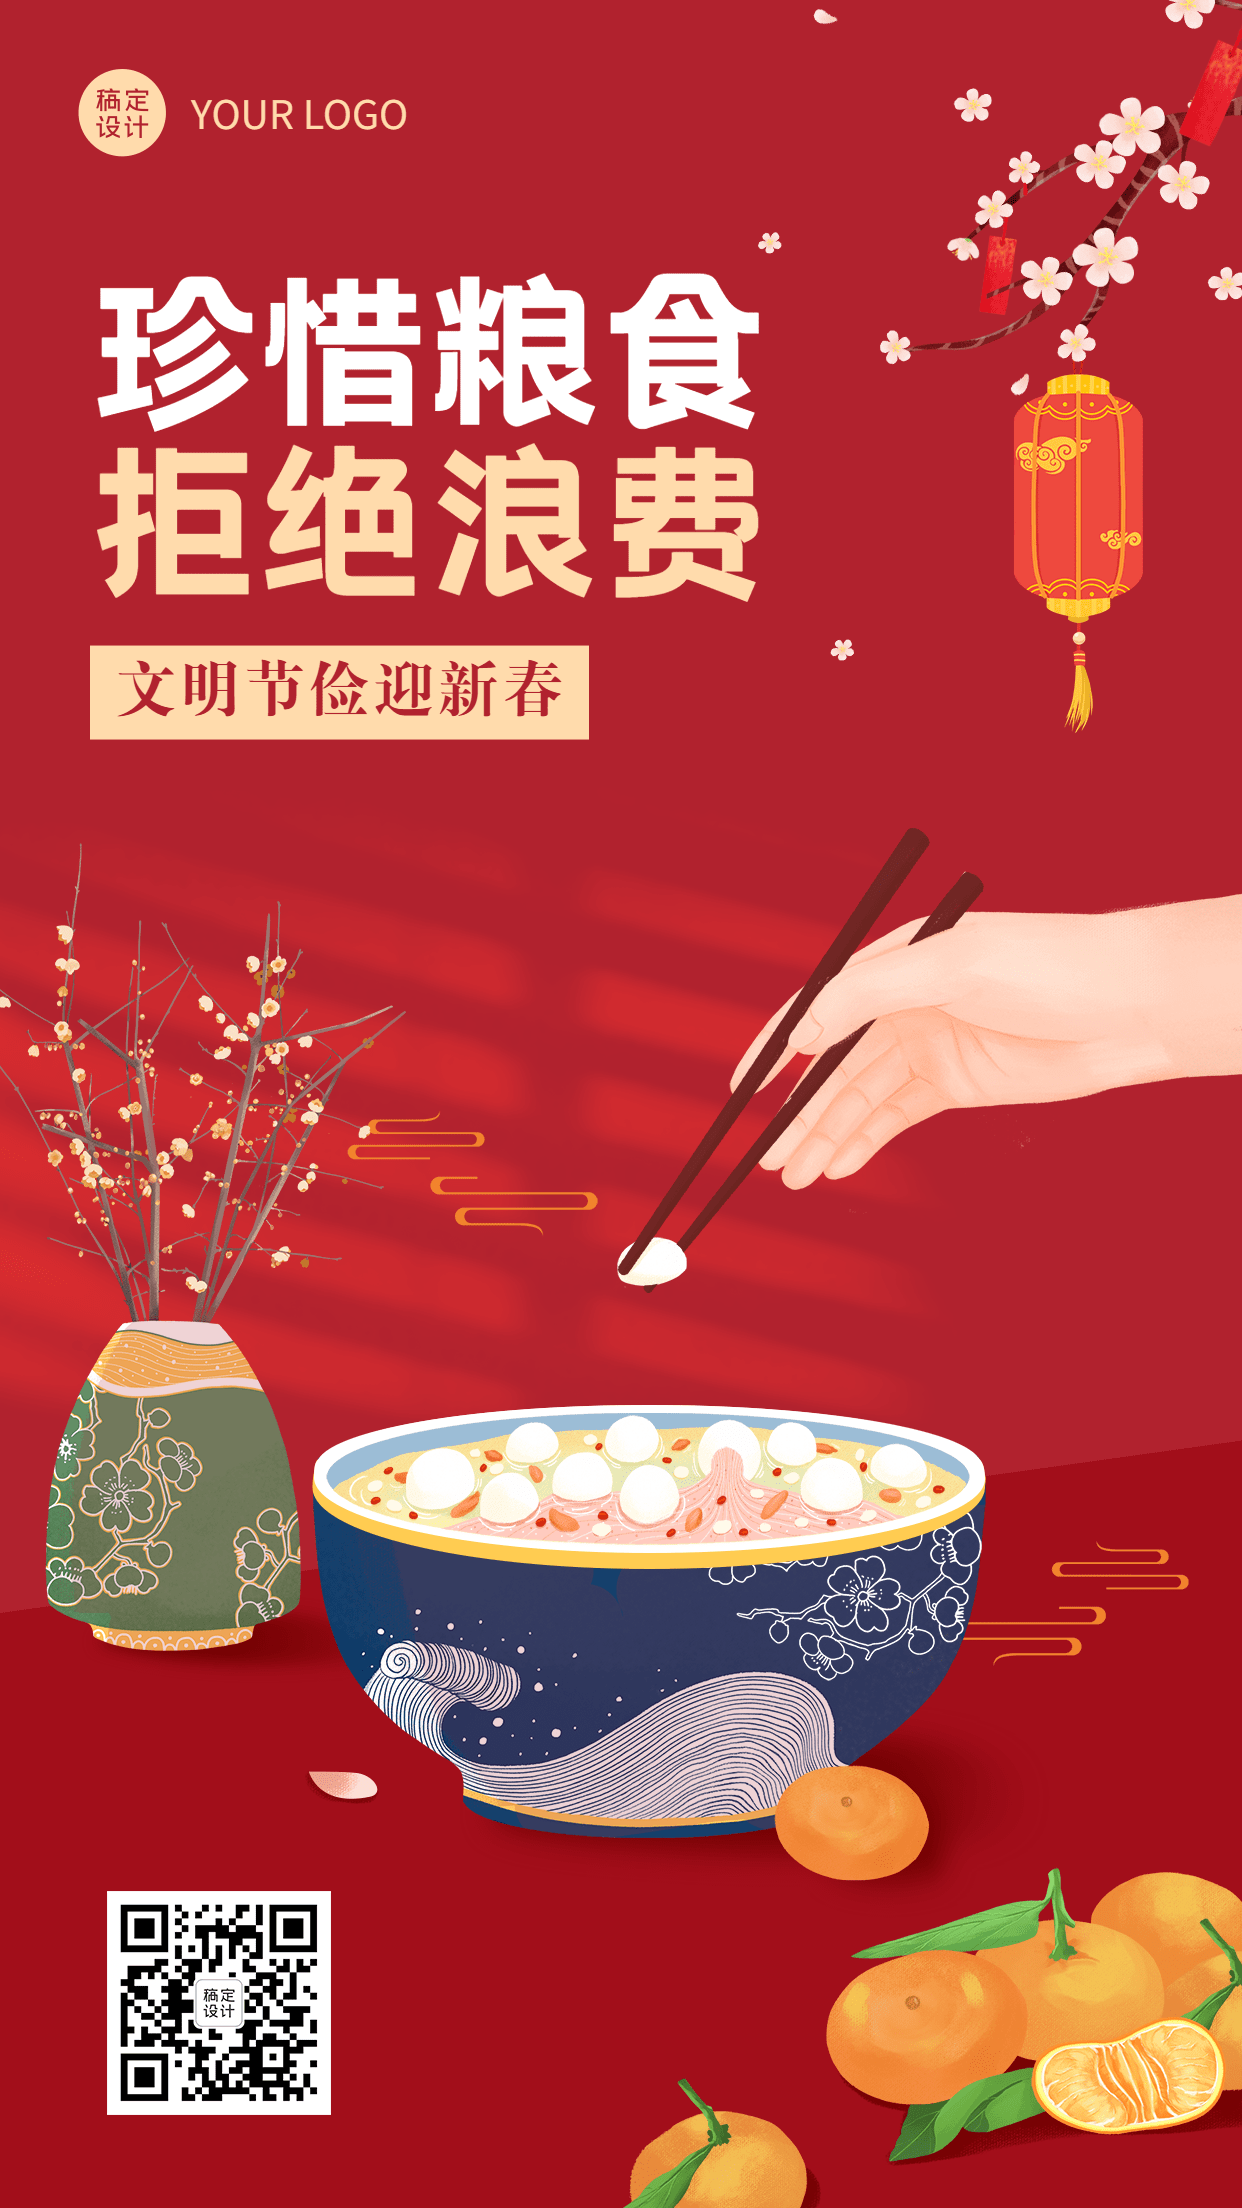 春节食品提示手机海报预览效果